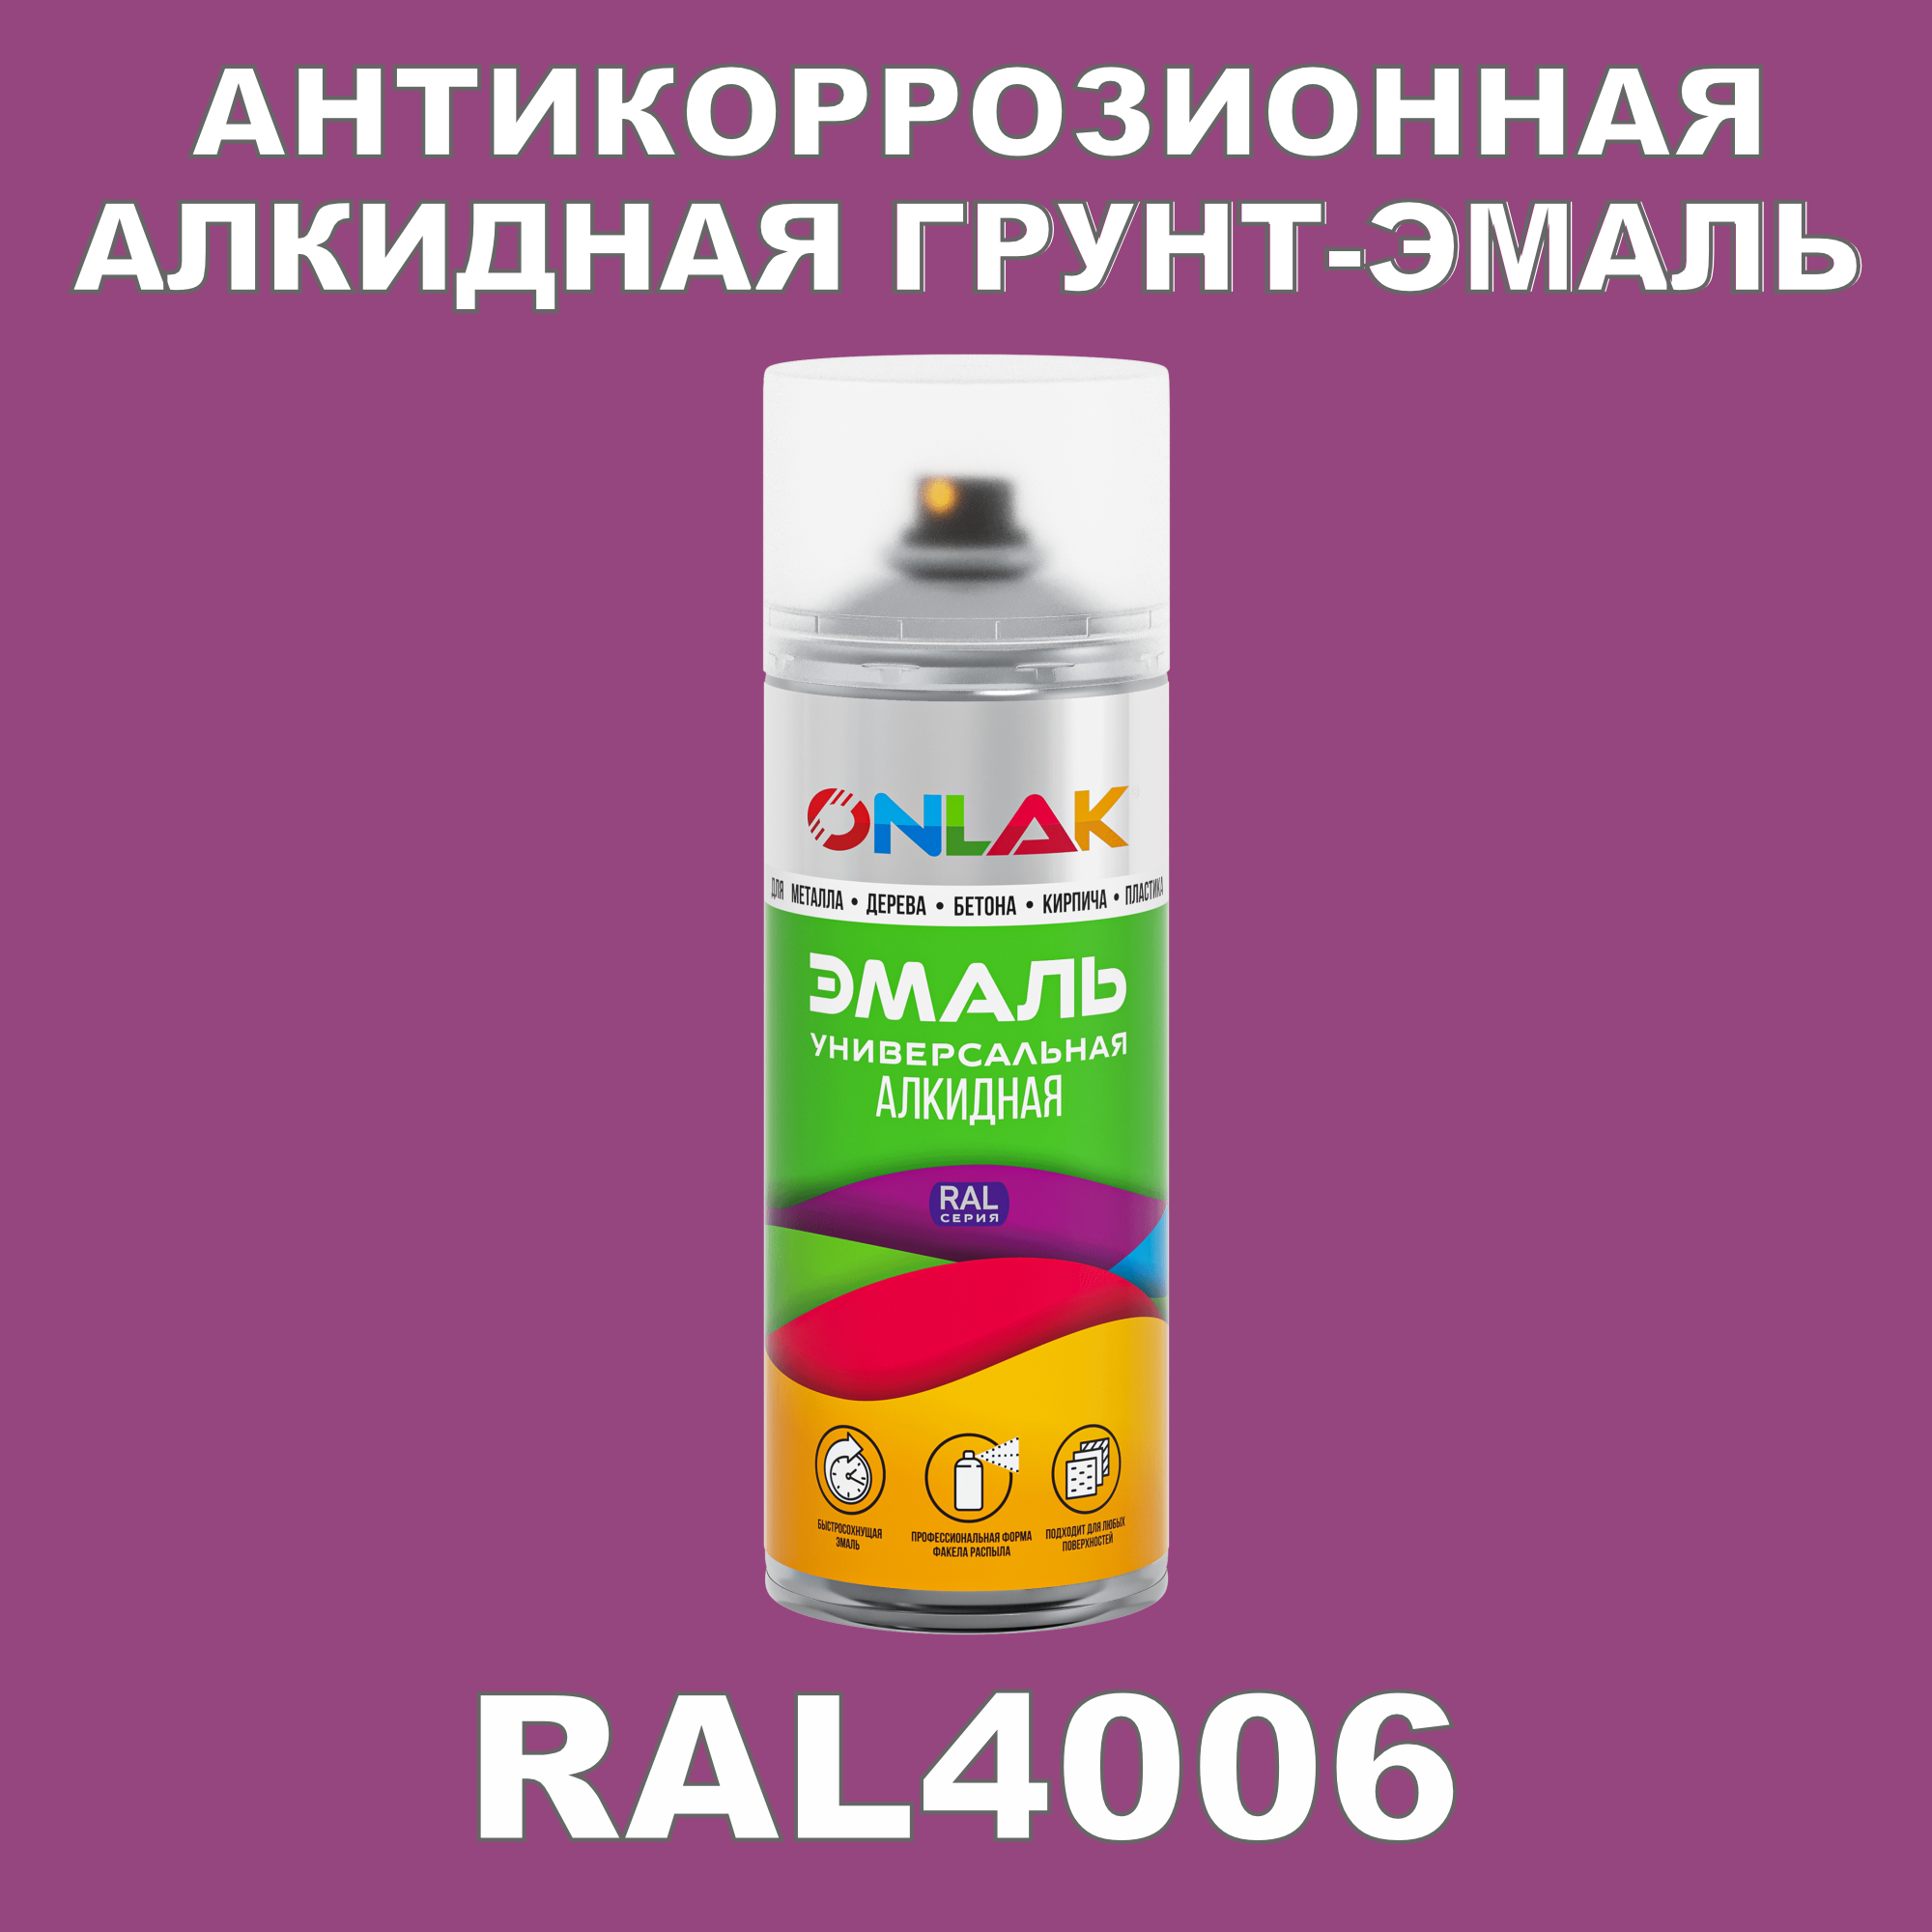 Антикоррозионная грунт-эмаль ONLAK RAL 4006,фиолетовый,682 мл artuniq color violet ной грунт для аквариума фиолетовый 1 кг